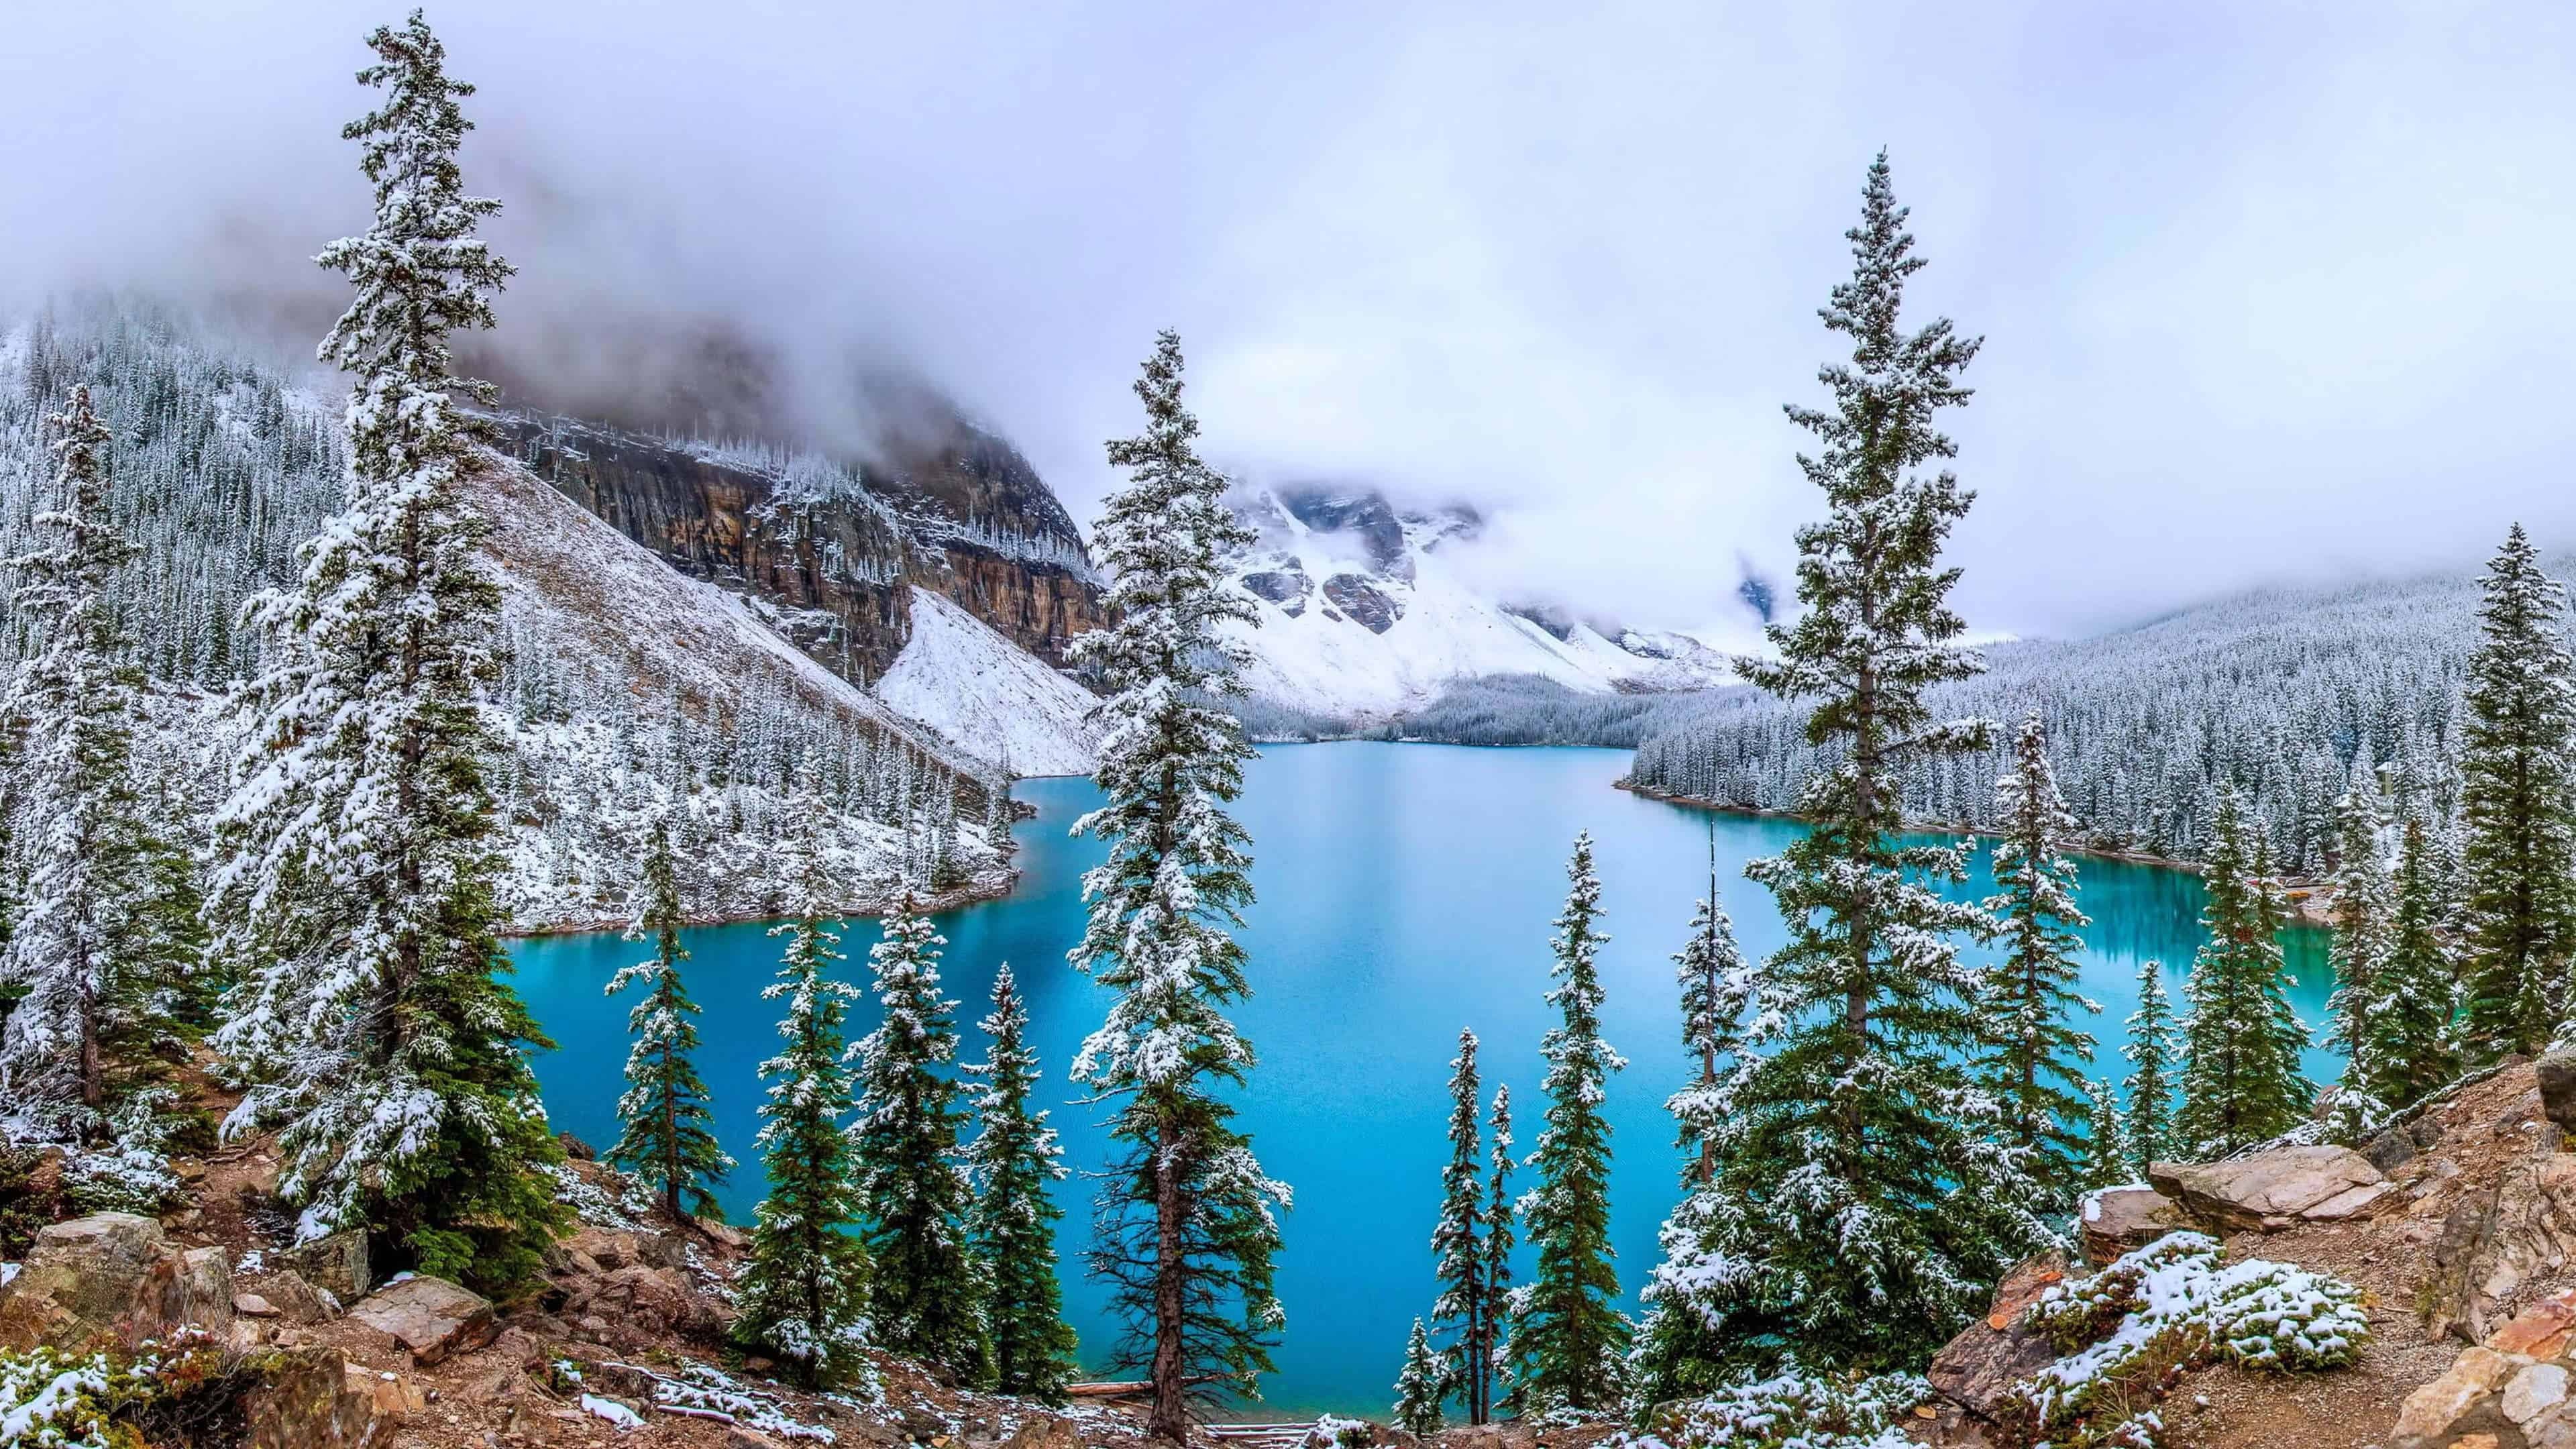 Moraine Lake, Canadian wilderness, UHD wallpaper, Majestic beauty, 3840x2160 4K Desktop